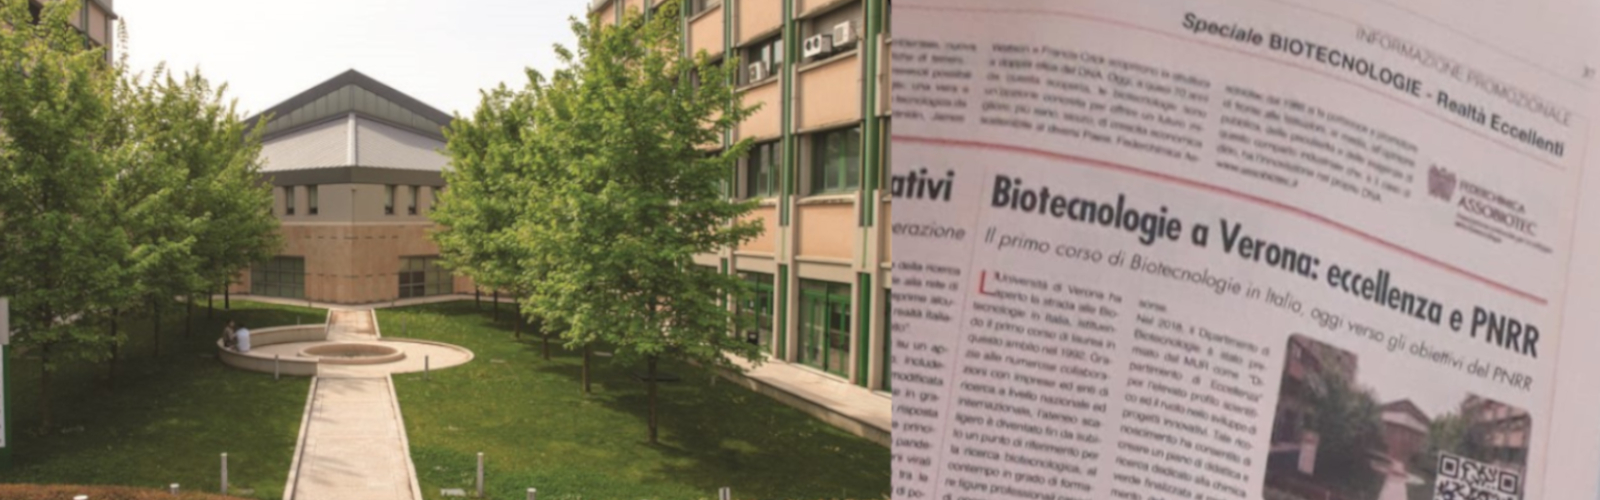 Biotecnologie a Verona: eccellenza e PNRR